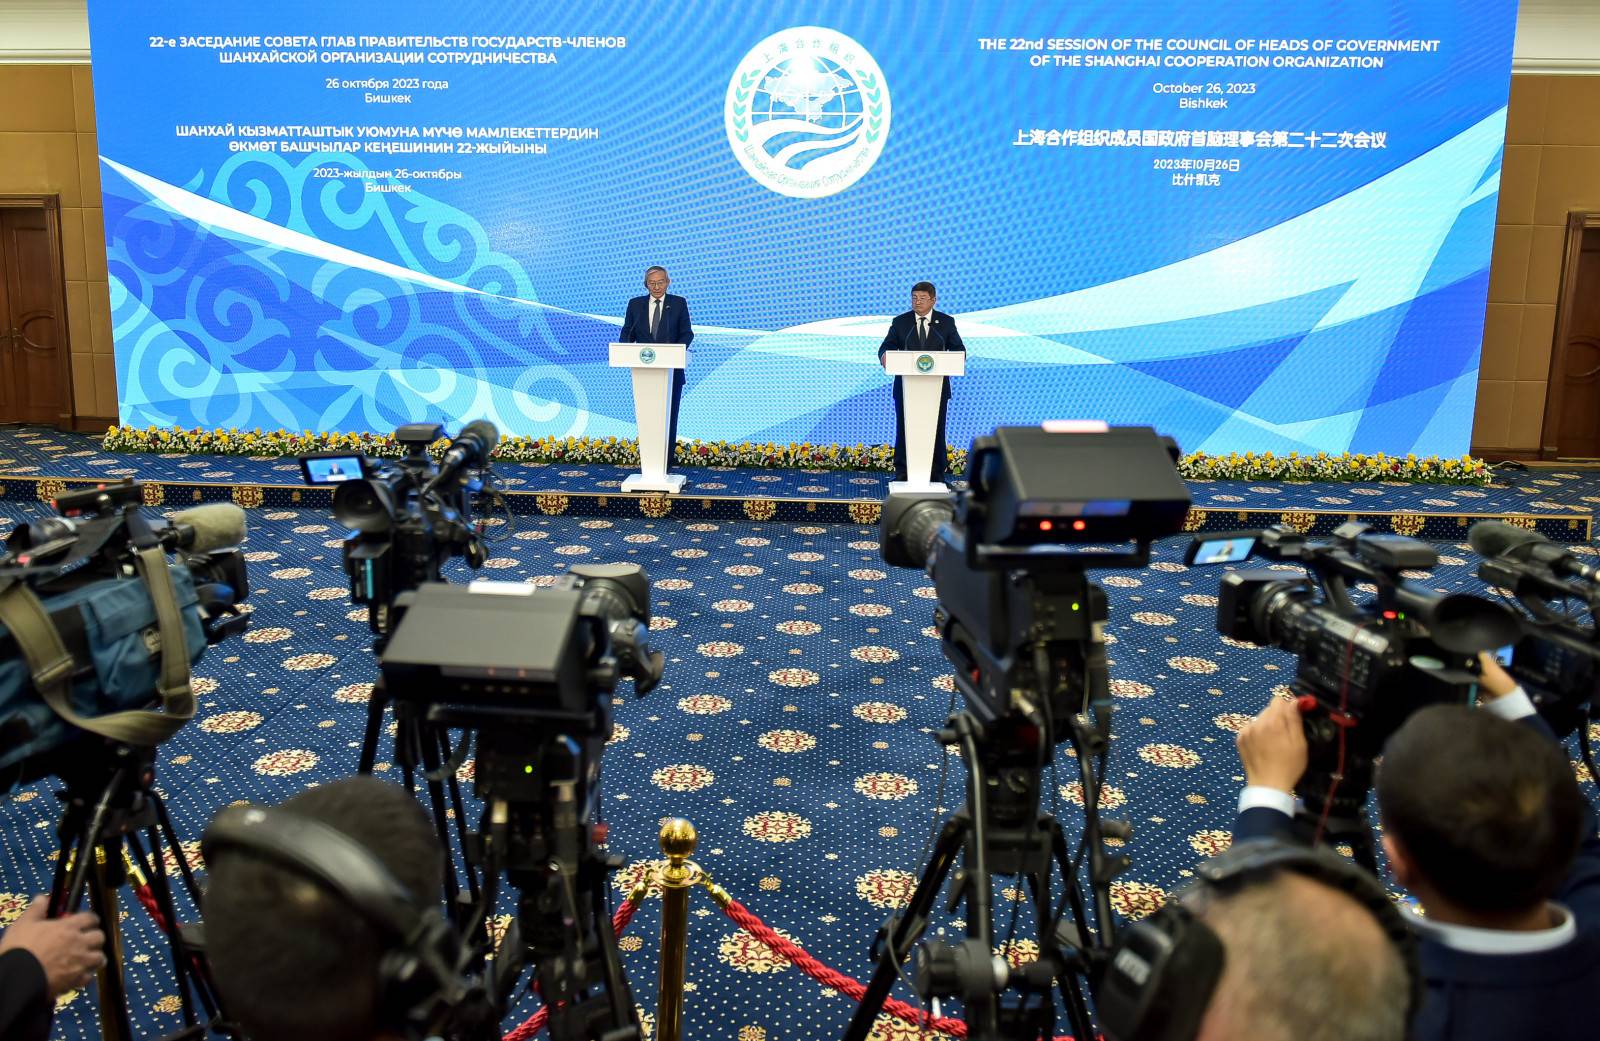 Пресс-конференция по итогам заседания Совета глав правительств государств-членов ШОС